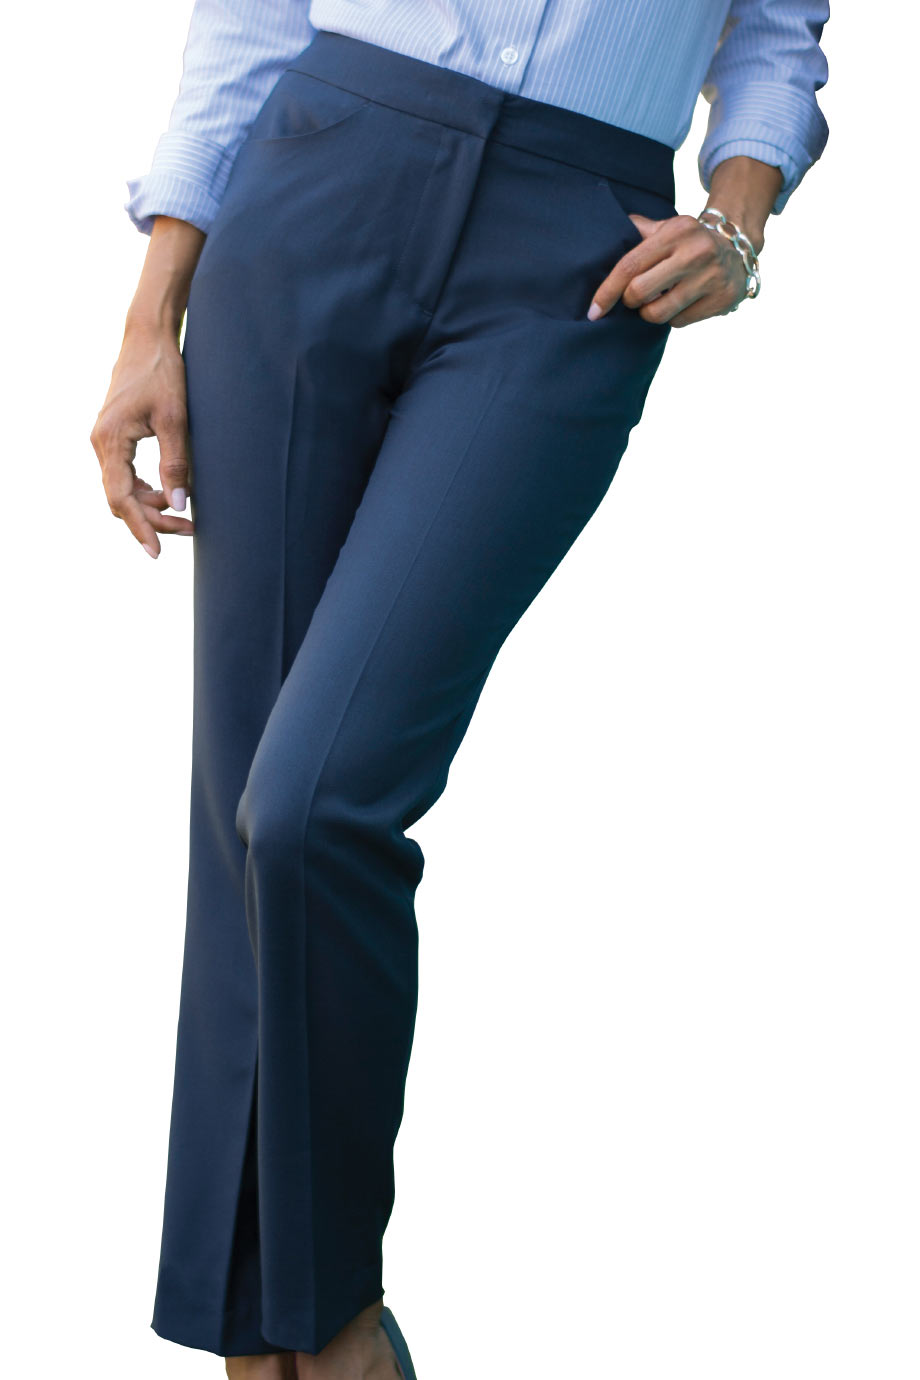 Edwards Garment Womens Lightweight Flat Front Zipper Pocket Dress Pant 